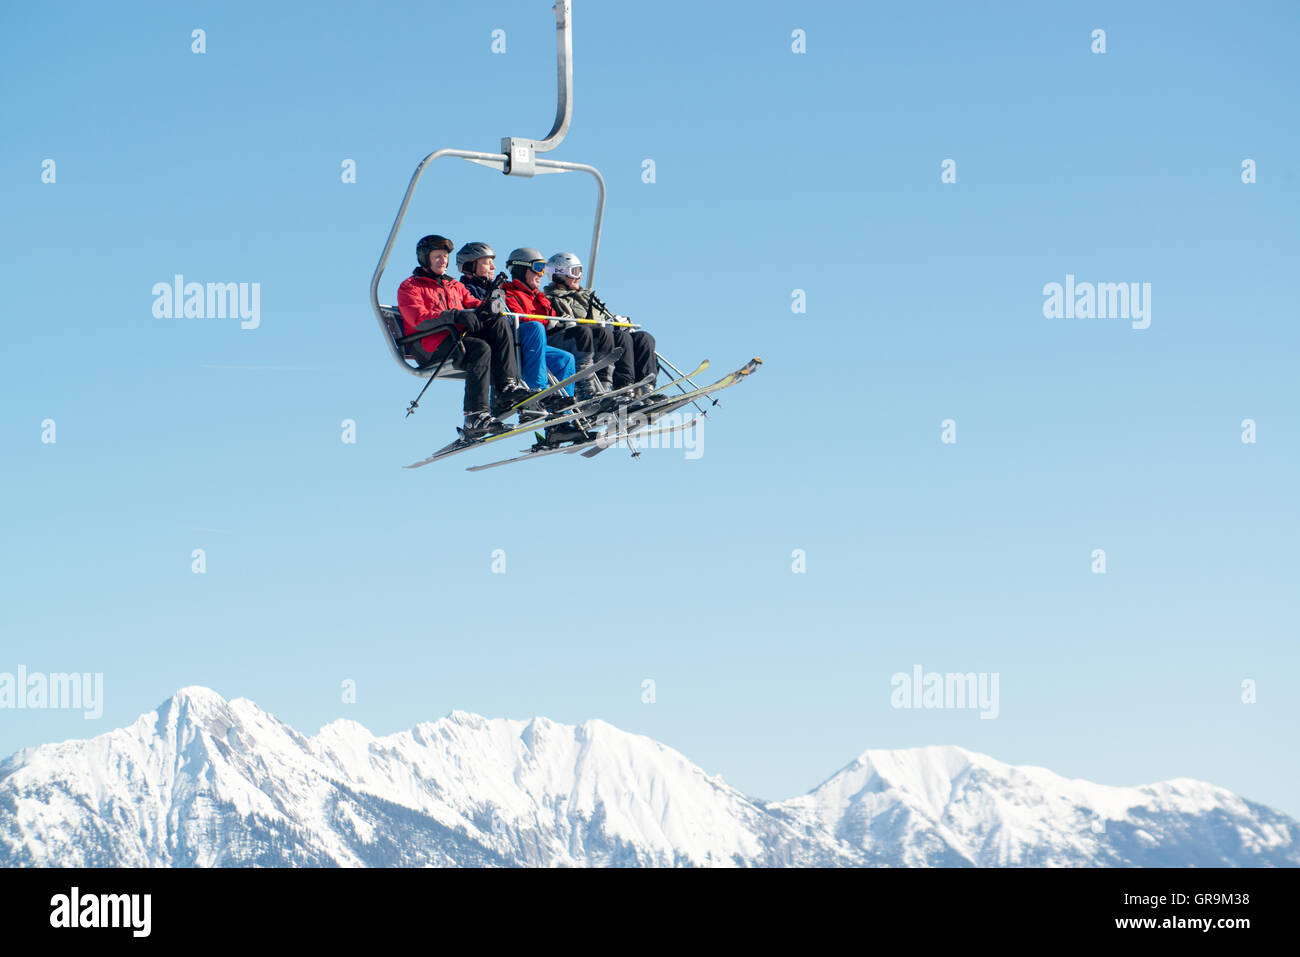 Les skieurs en télésiège sur les montagnes enneigées Banque D'Images